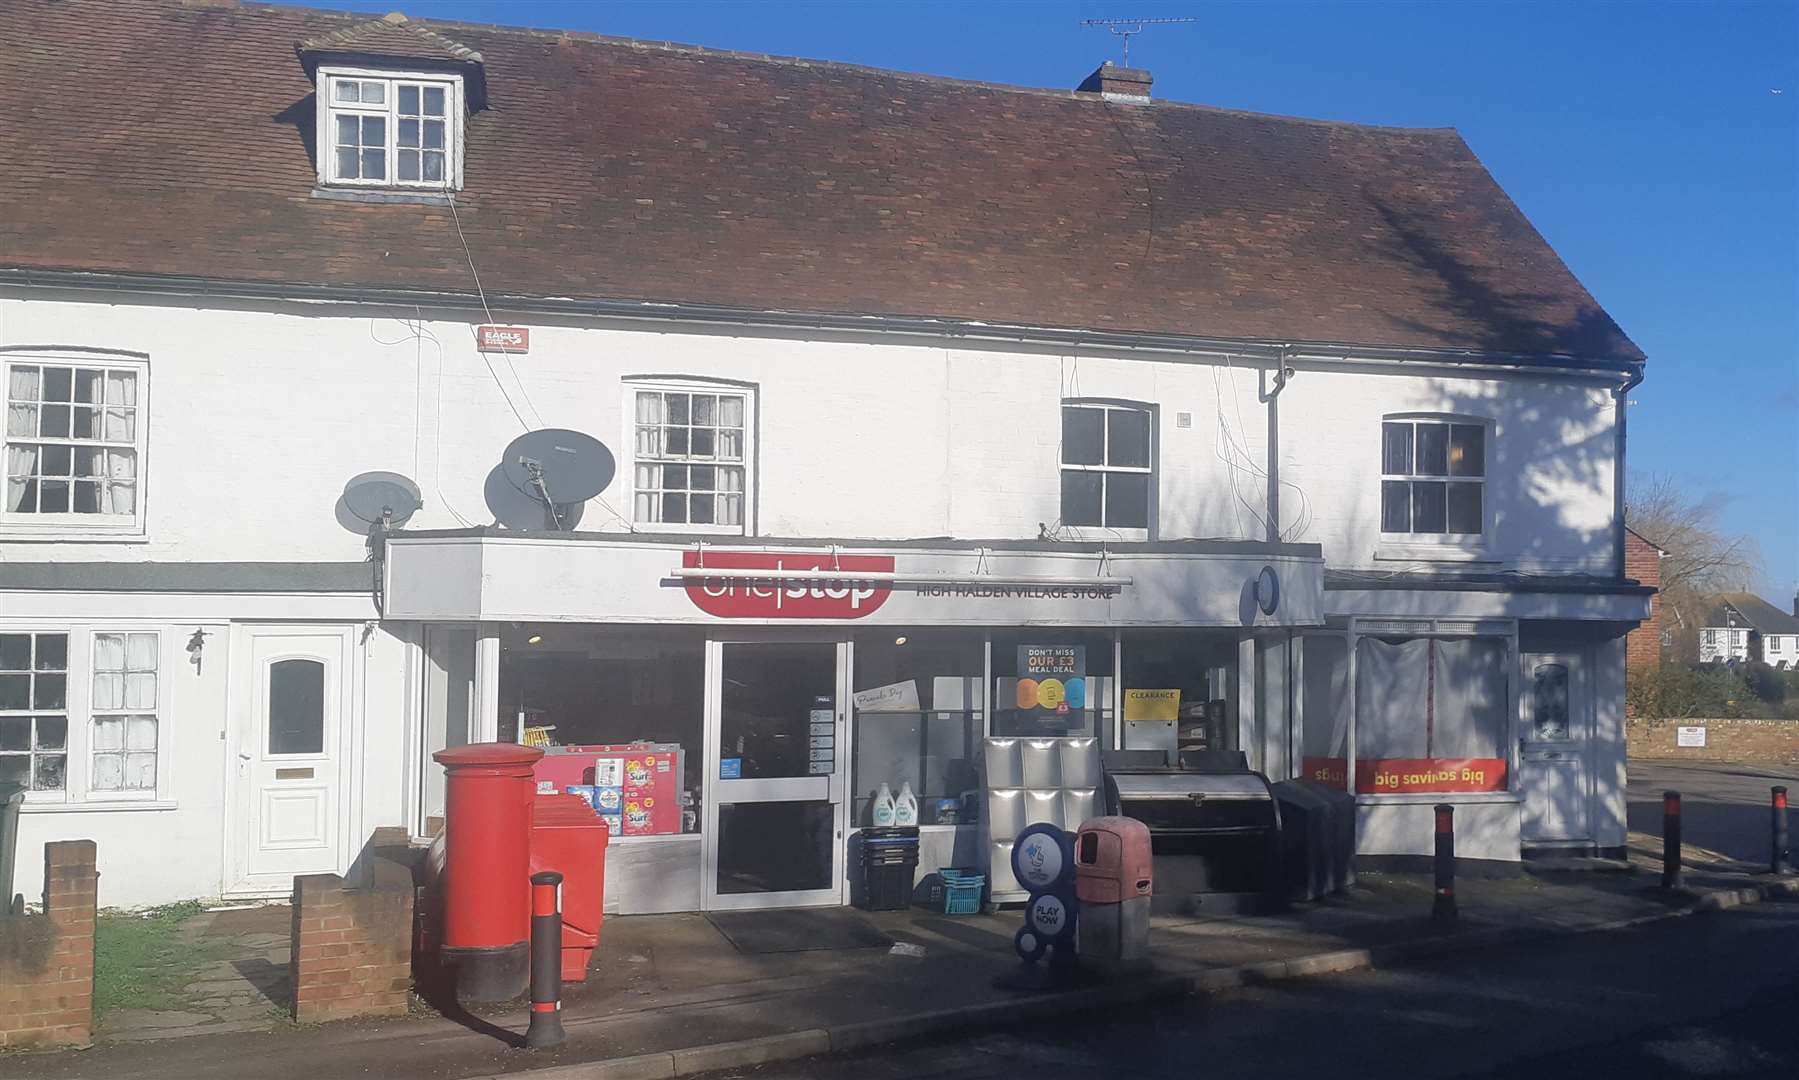 The One Stop shop in High Halden has been burgled